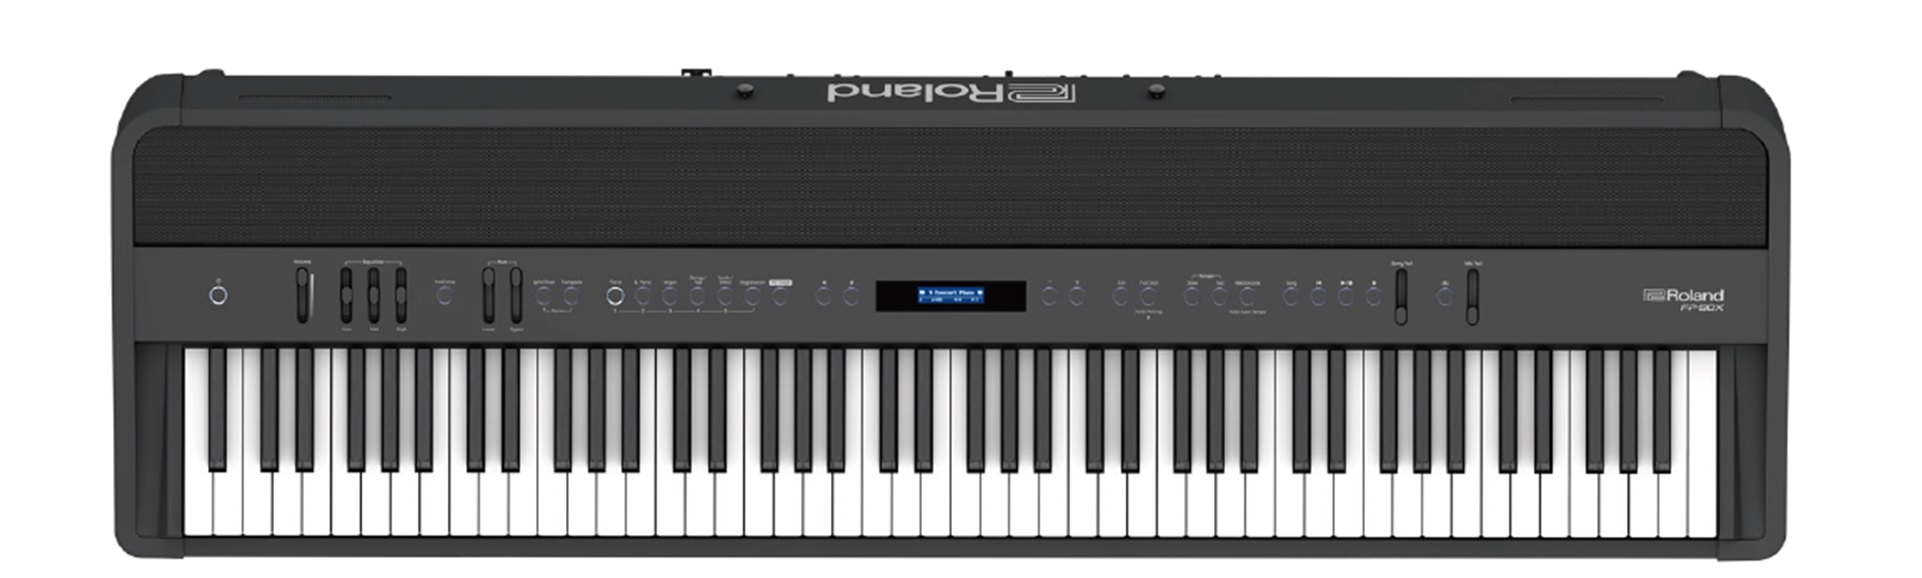 電子ピアノ|新製品|Roland FP-90X/FP-60X/FP-30X ポータブル・ピアノFPシリーズがグレードアップして新登場